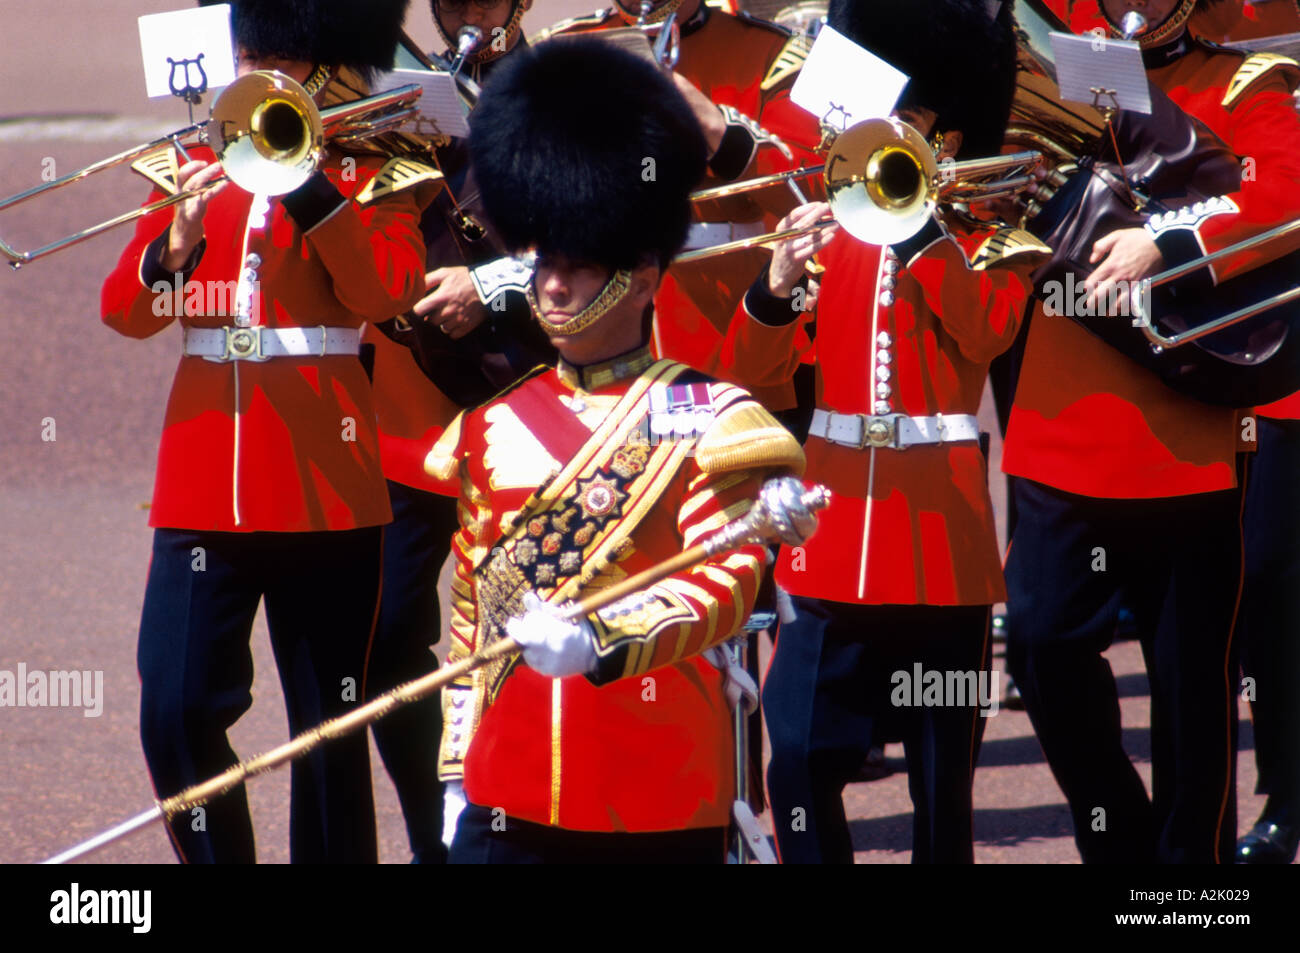 United Kingdom London Buckingham Palace Changing Guards Stock Photo